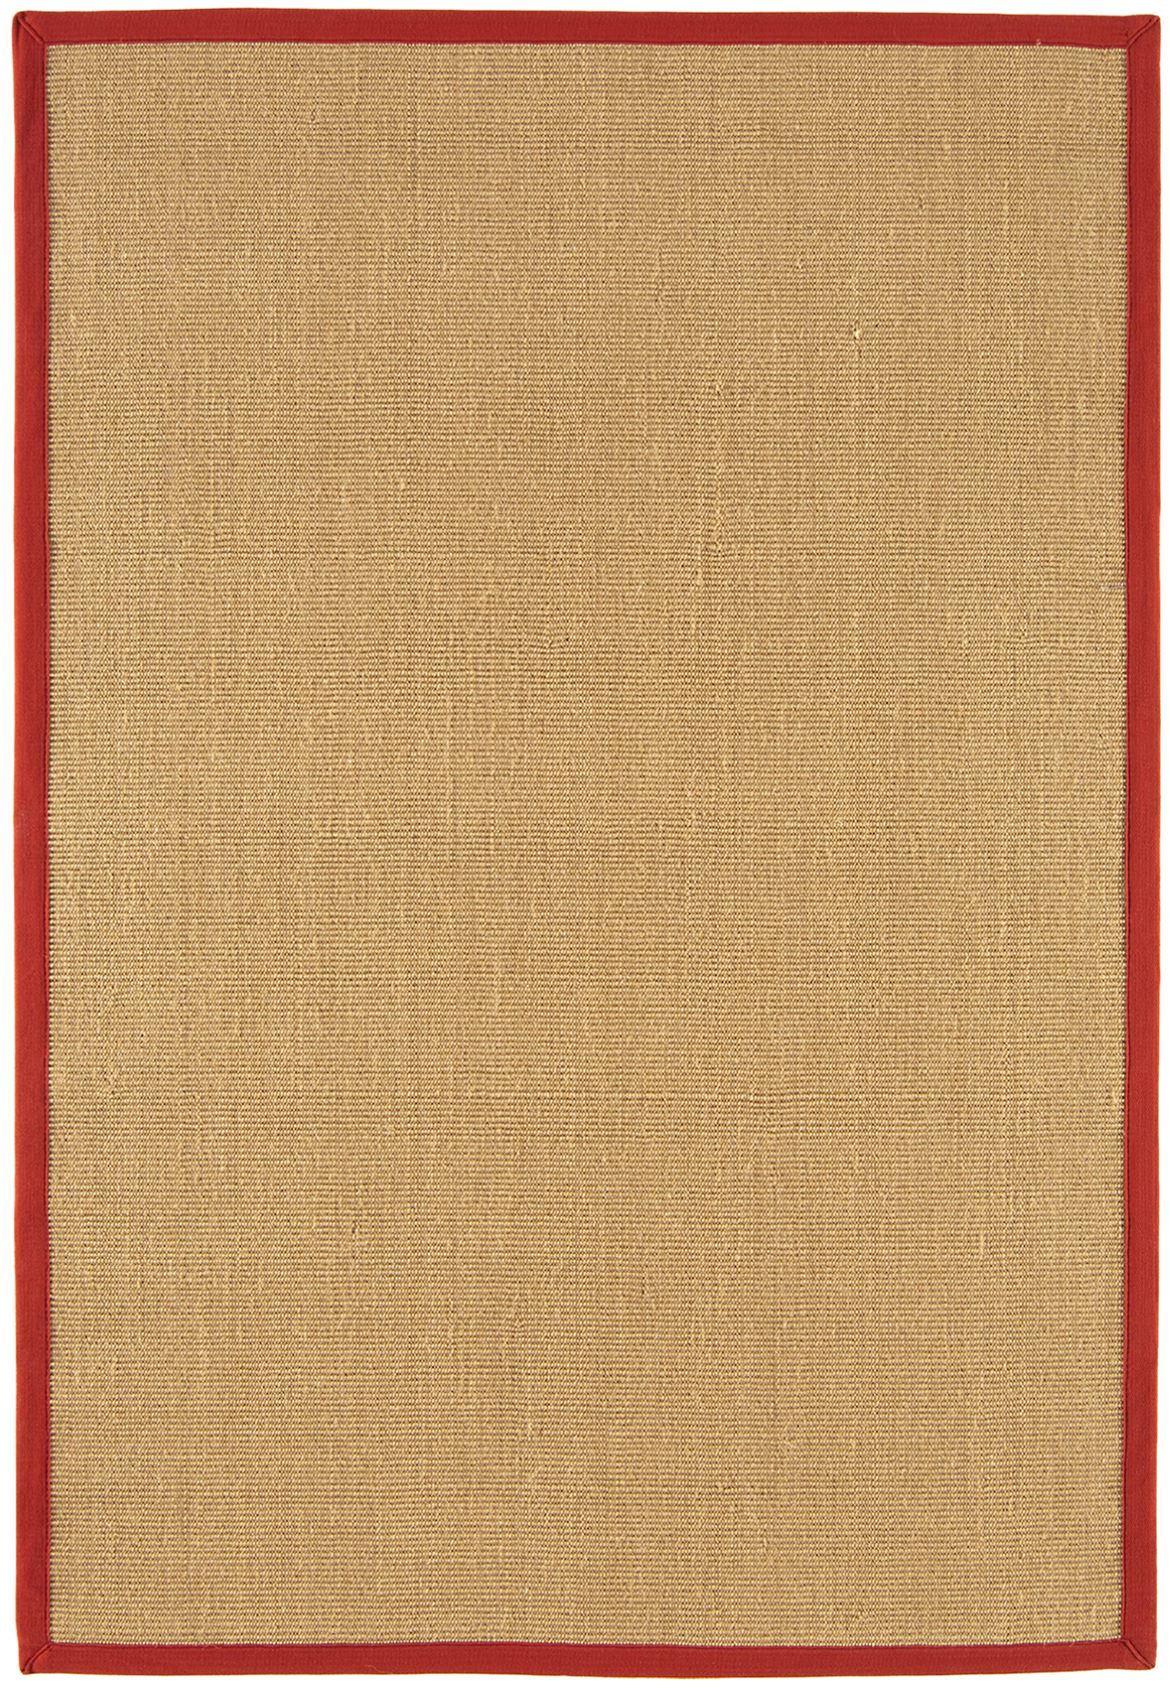 asiatic-rug-sisal-linen-red-border